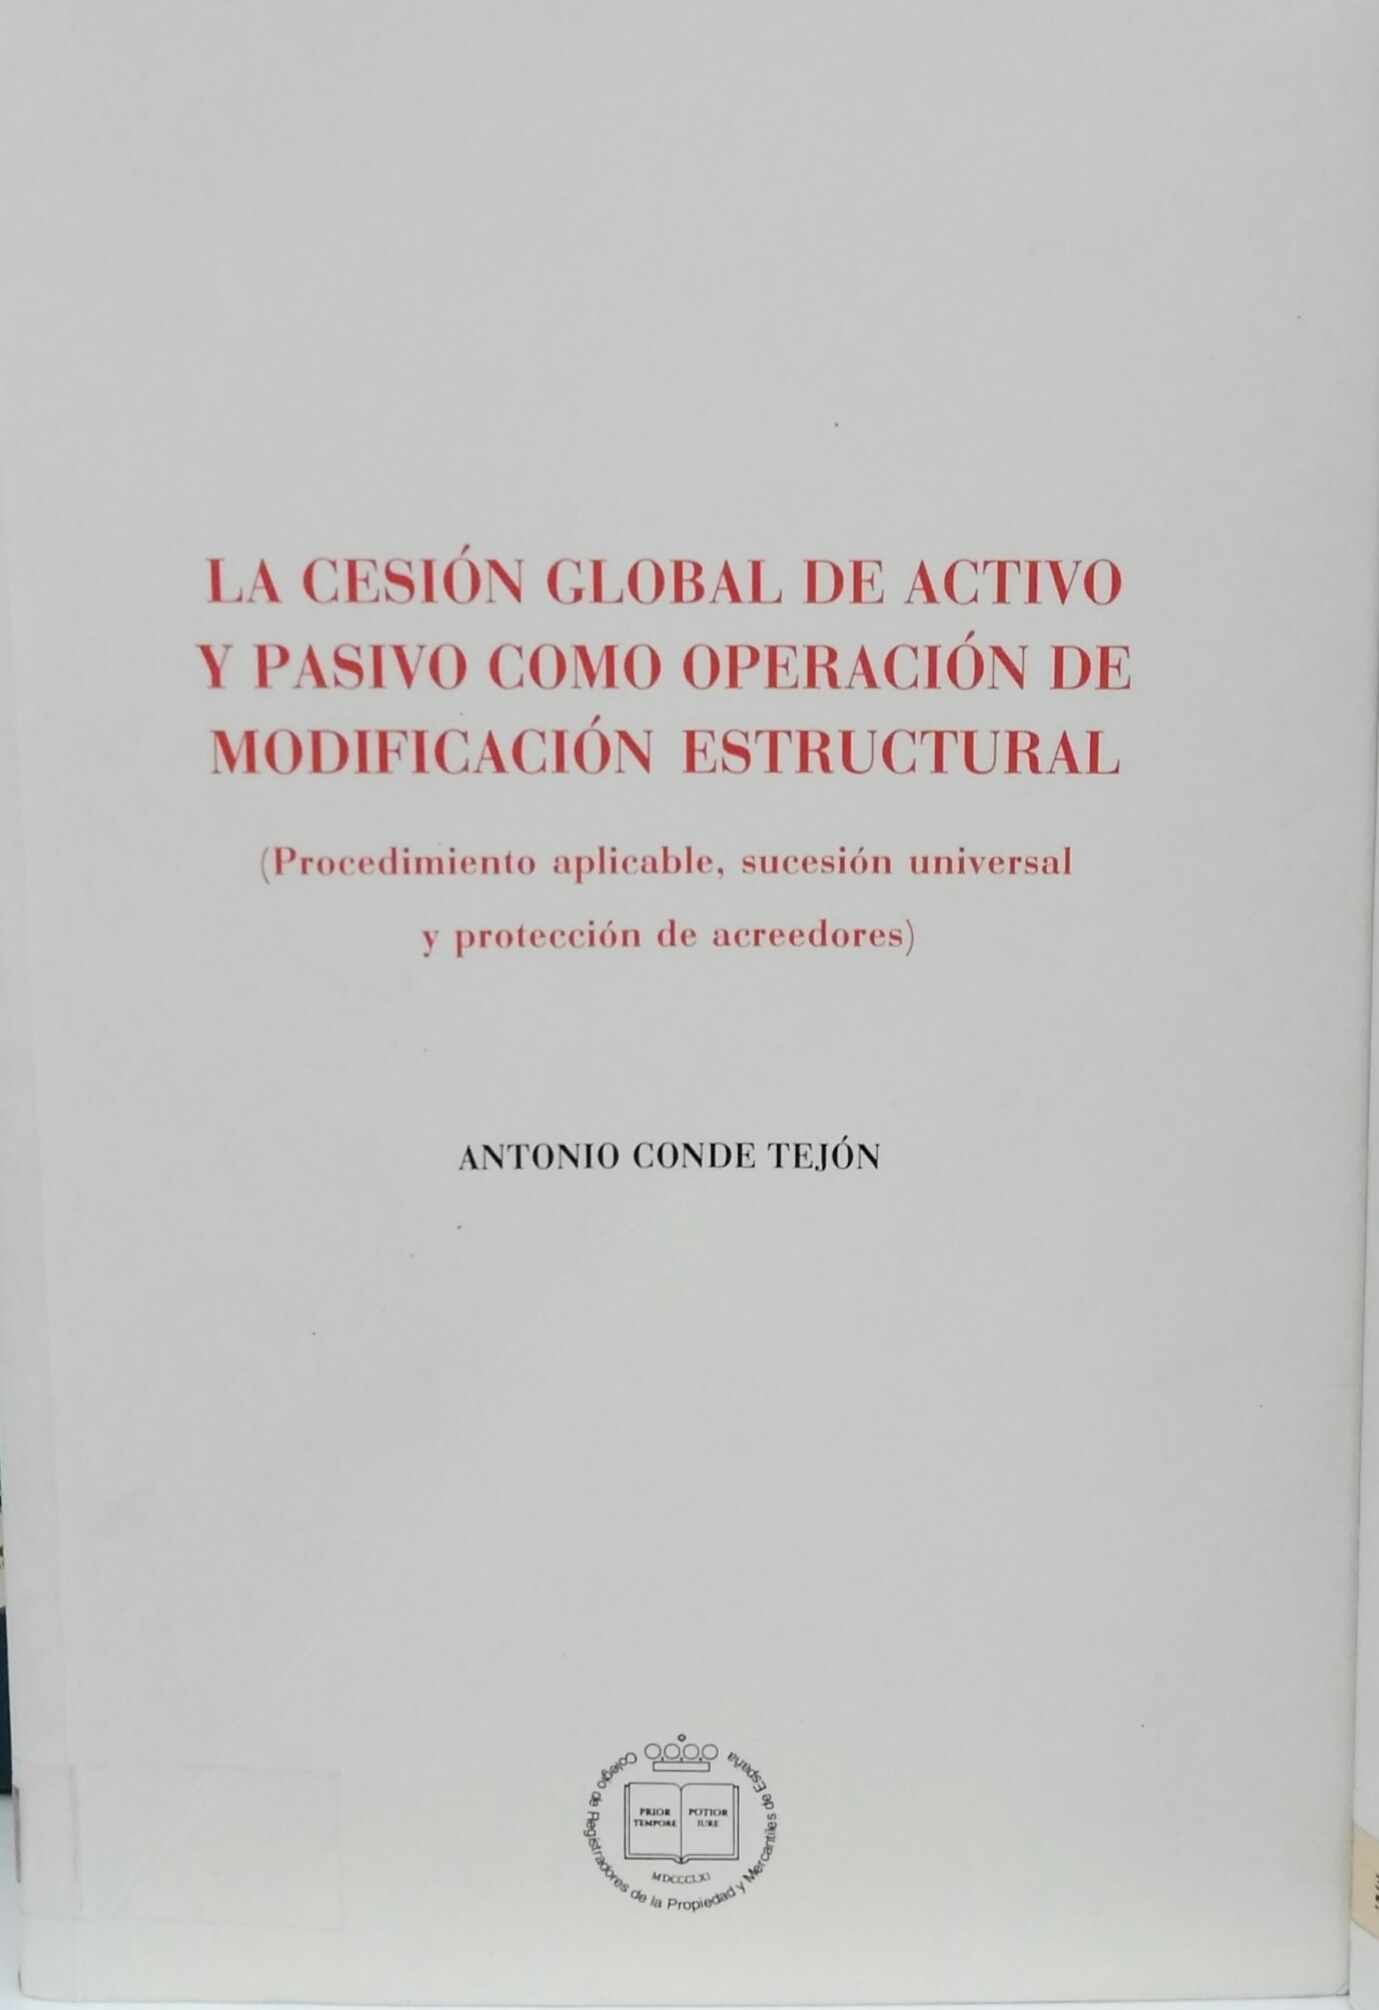 Imagen de portada del libro La cesión global de activo y pasivo como operación de modificación estructural